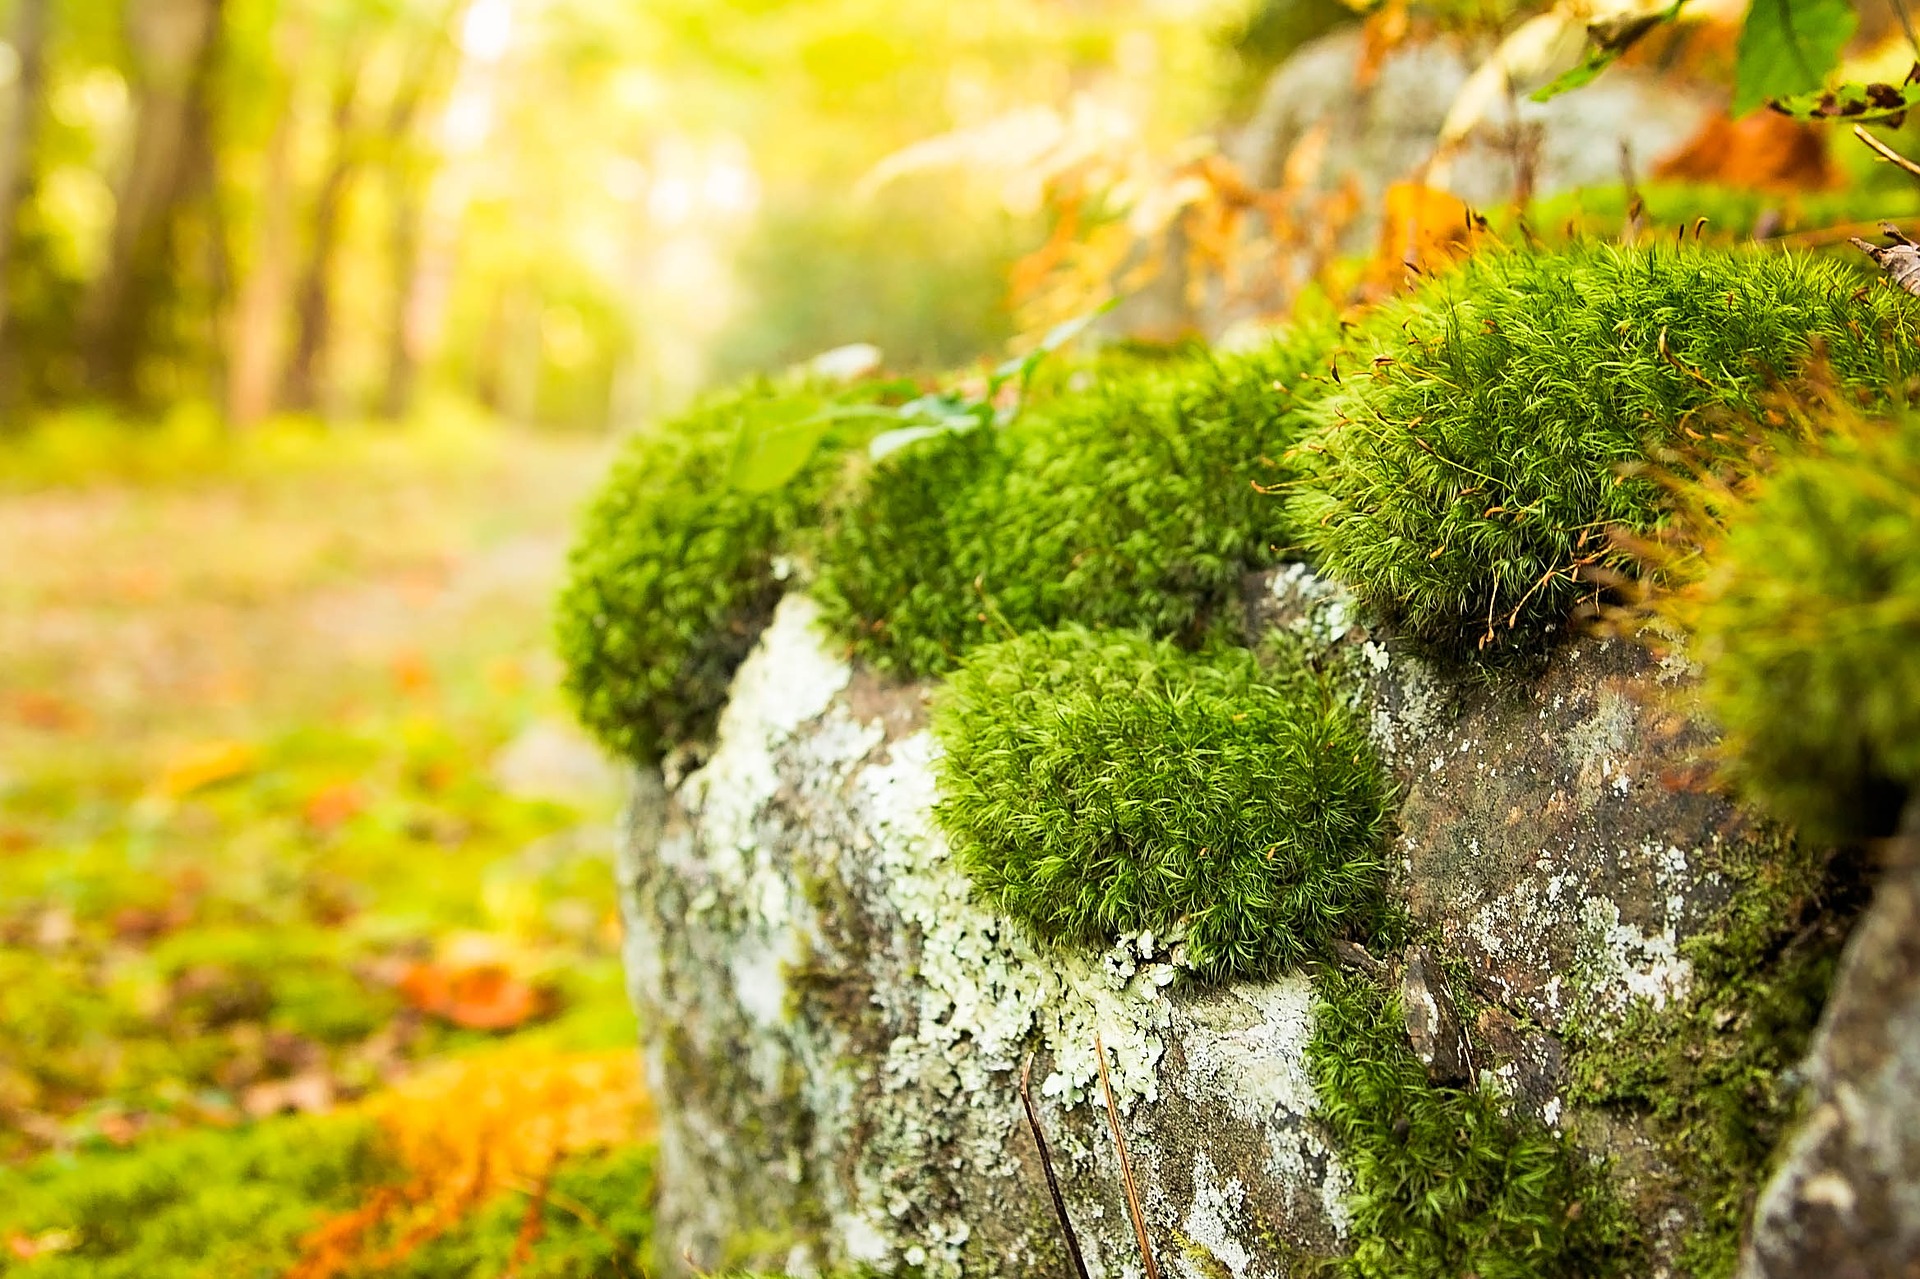 green moss growing on rocks in a woods